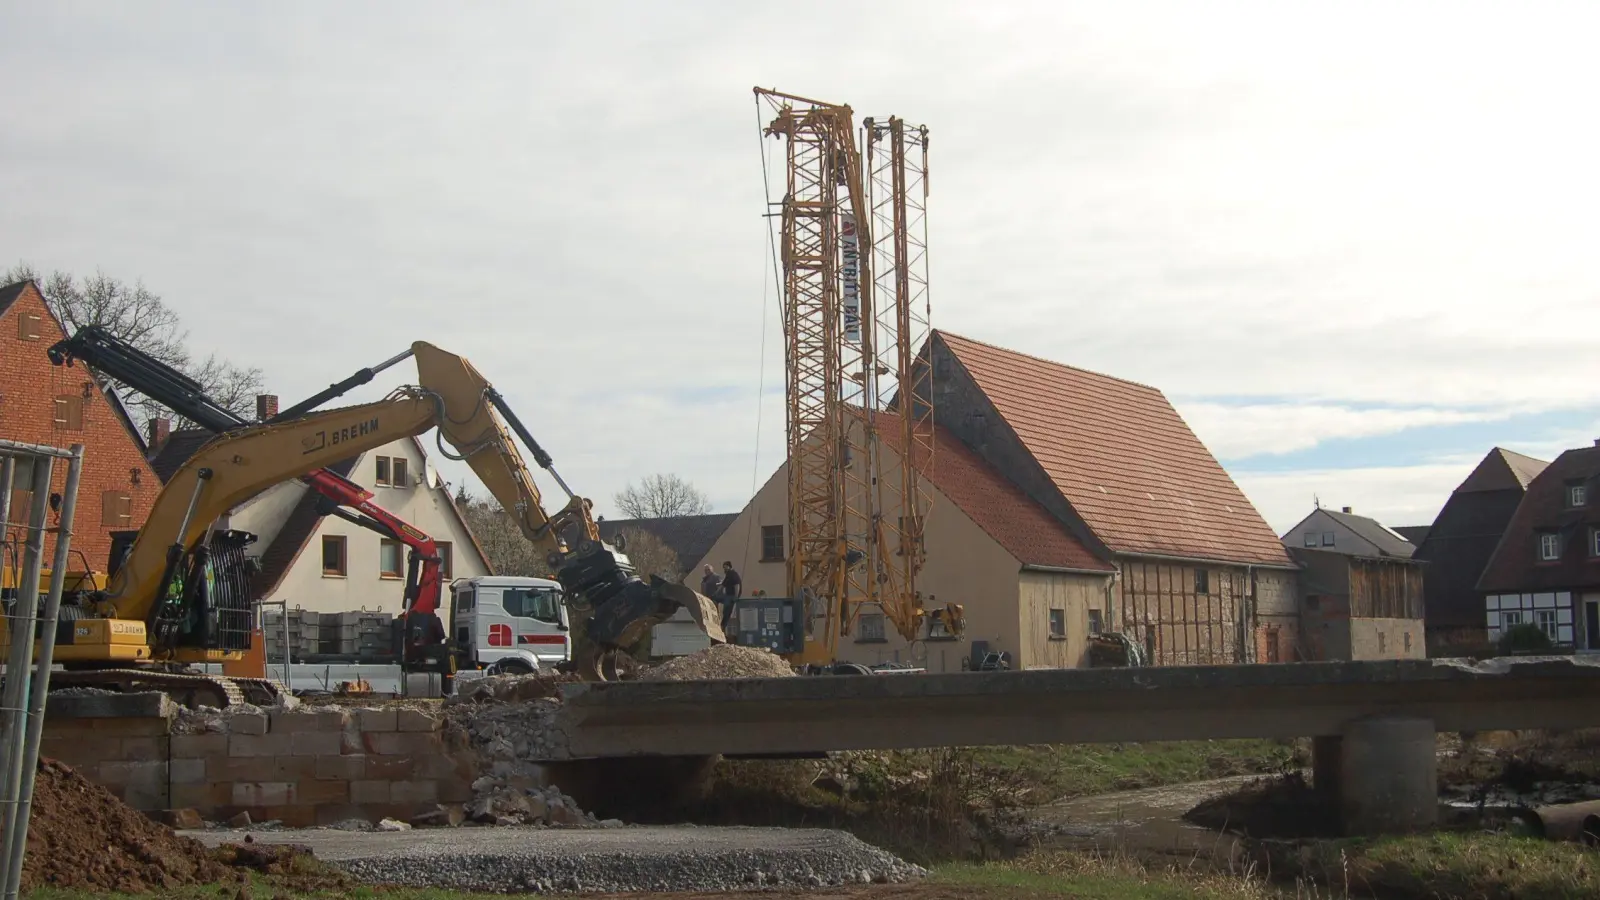 Bisher muss der Abriss der Steinachbrücke in Gutenstetten noch gebremst laufen. Aber Bürgermeister Gerhard Eichner zeigt sich zuversichtlich, dass es nach der Muschelabsuche zügiger vorangeht. (Foto: Christa Frühwald)